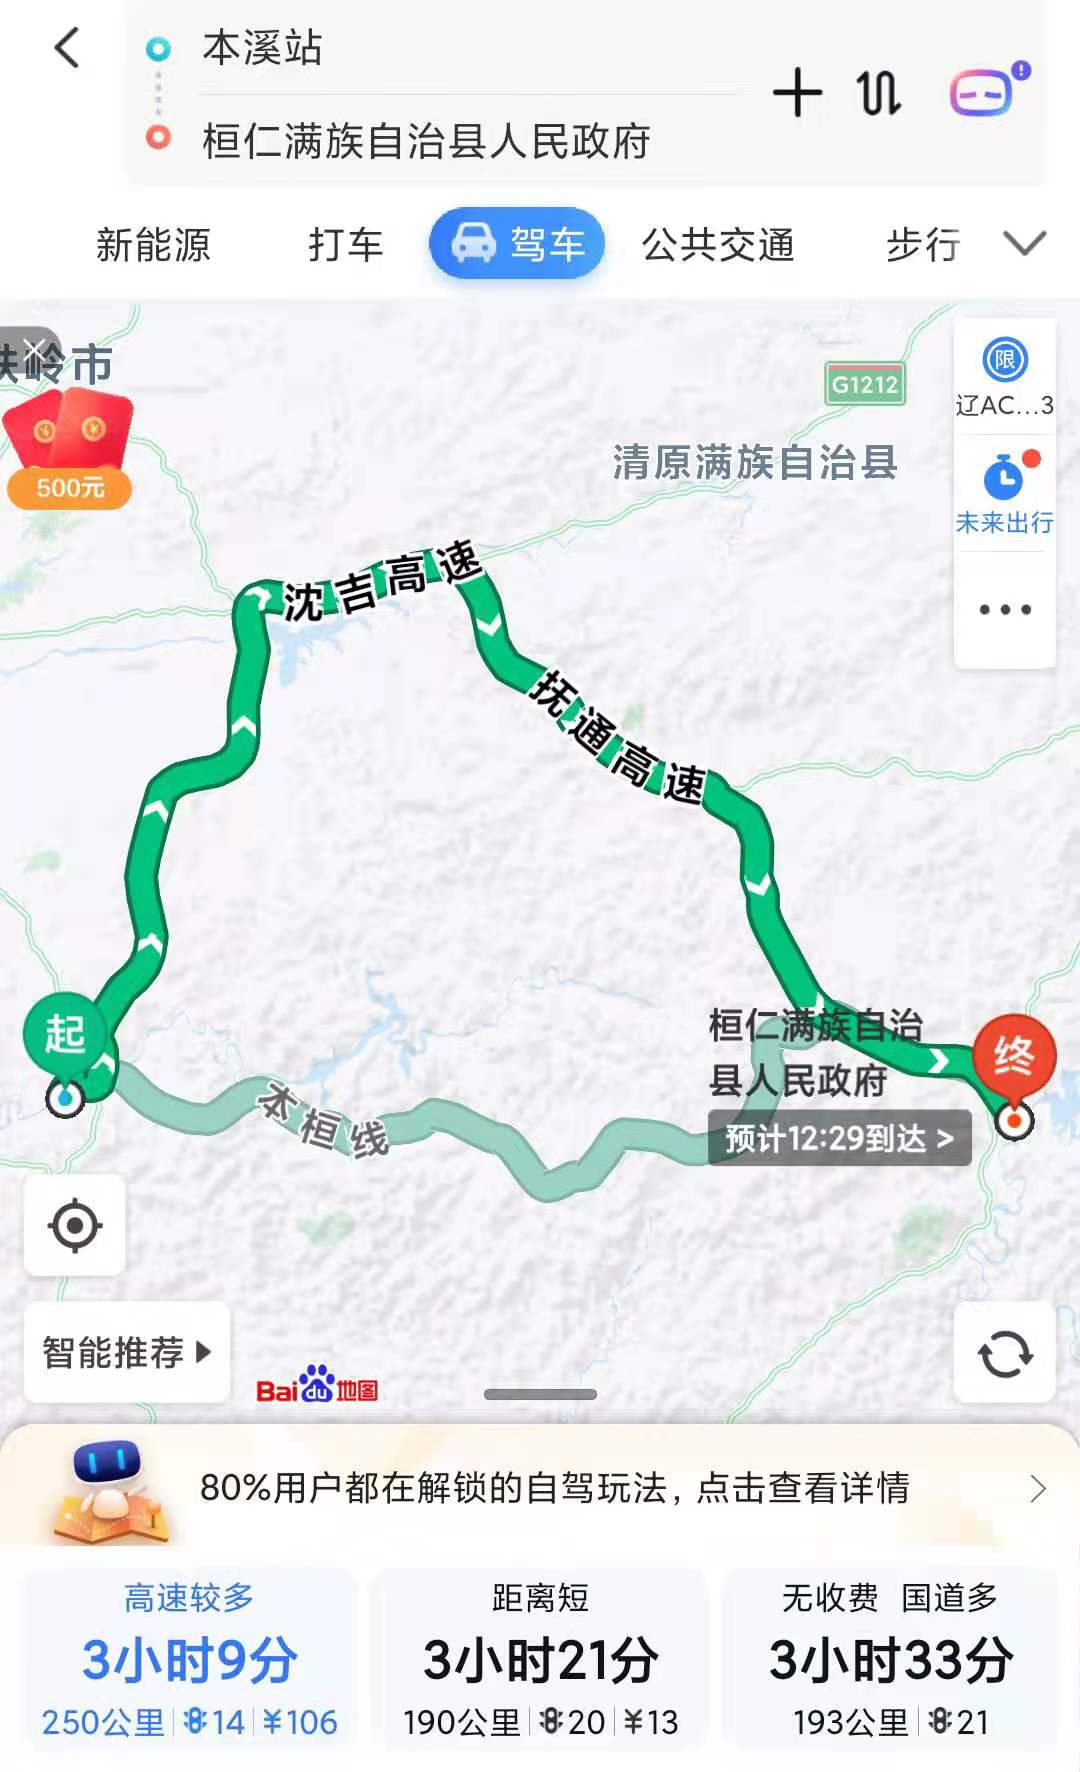 辽宁省高速公路的现状介绍与未来发展建议